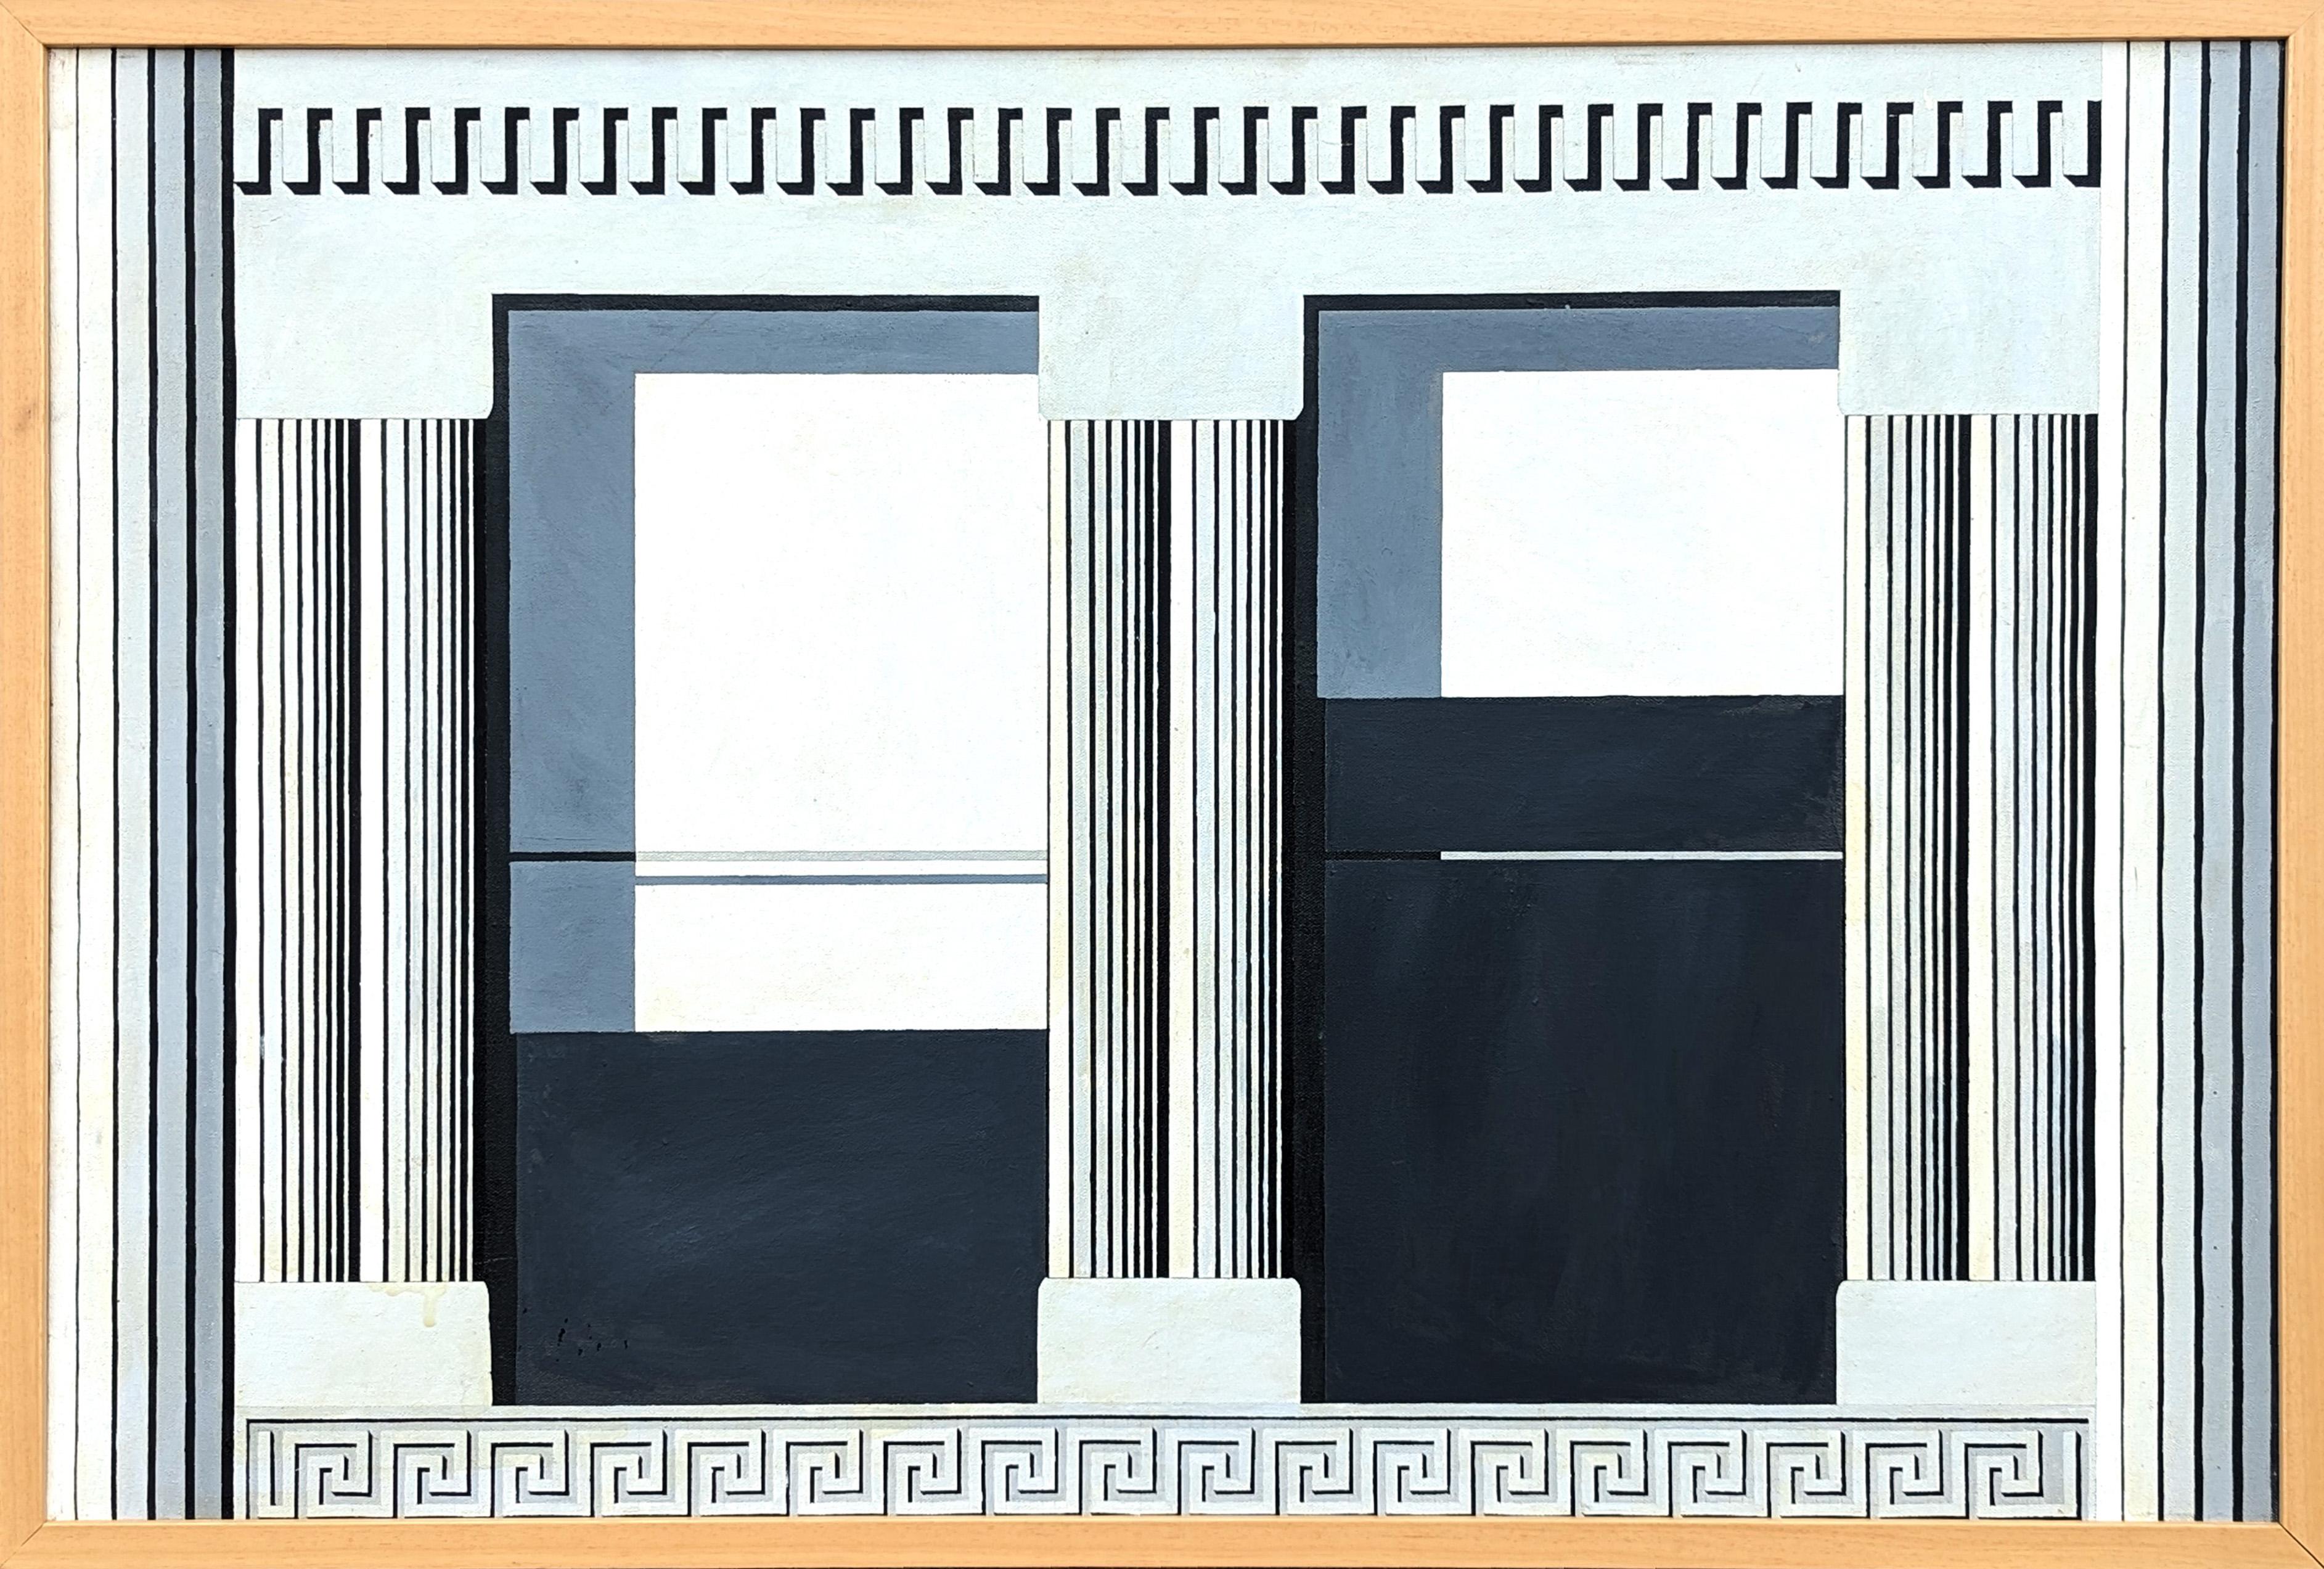 Landscape Painting Clark V. Fox - "The Window" peinture moderne d'une façade architecturale dans les tons gris et noirs.